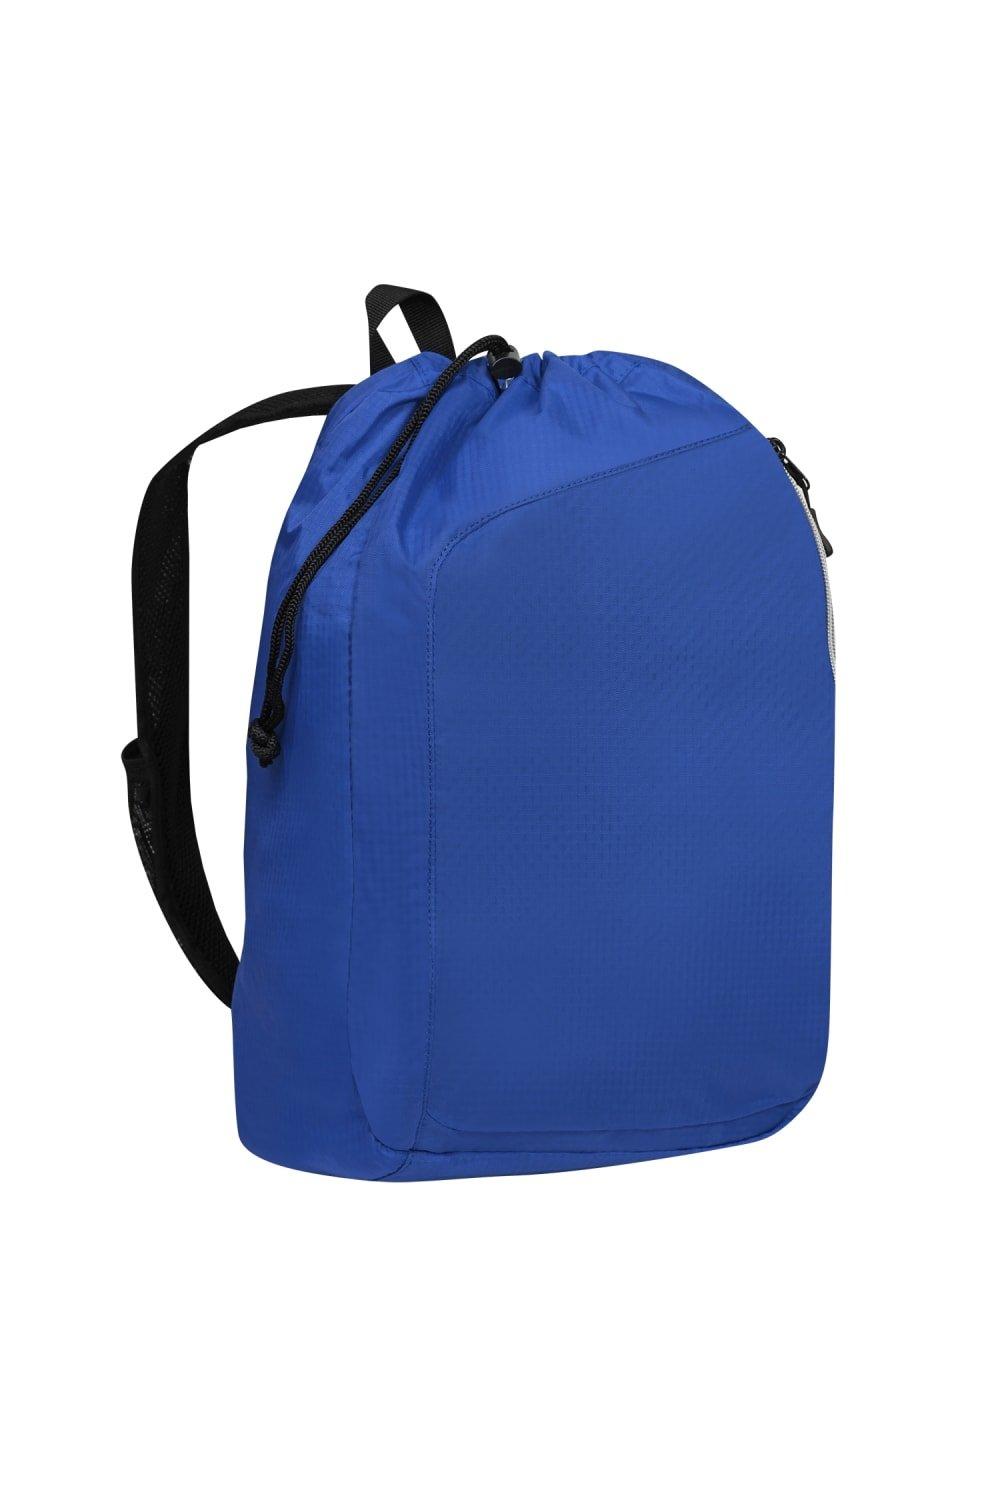 Рюкзак Endurance Sonic с одним ремнем Ogio, синий сумка endurance pulse на шнурке ogio синий